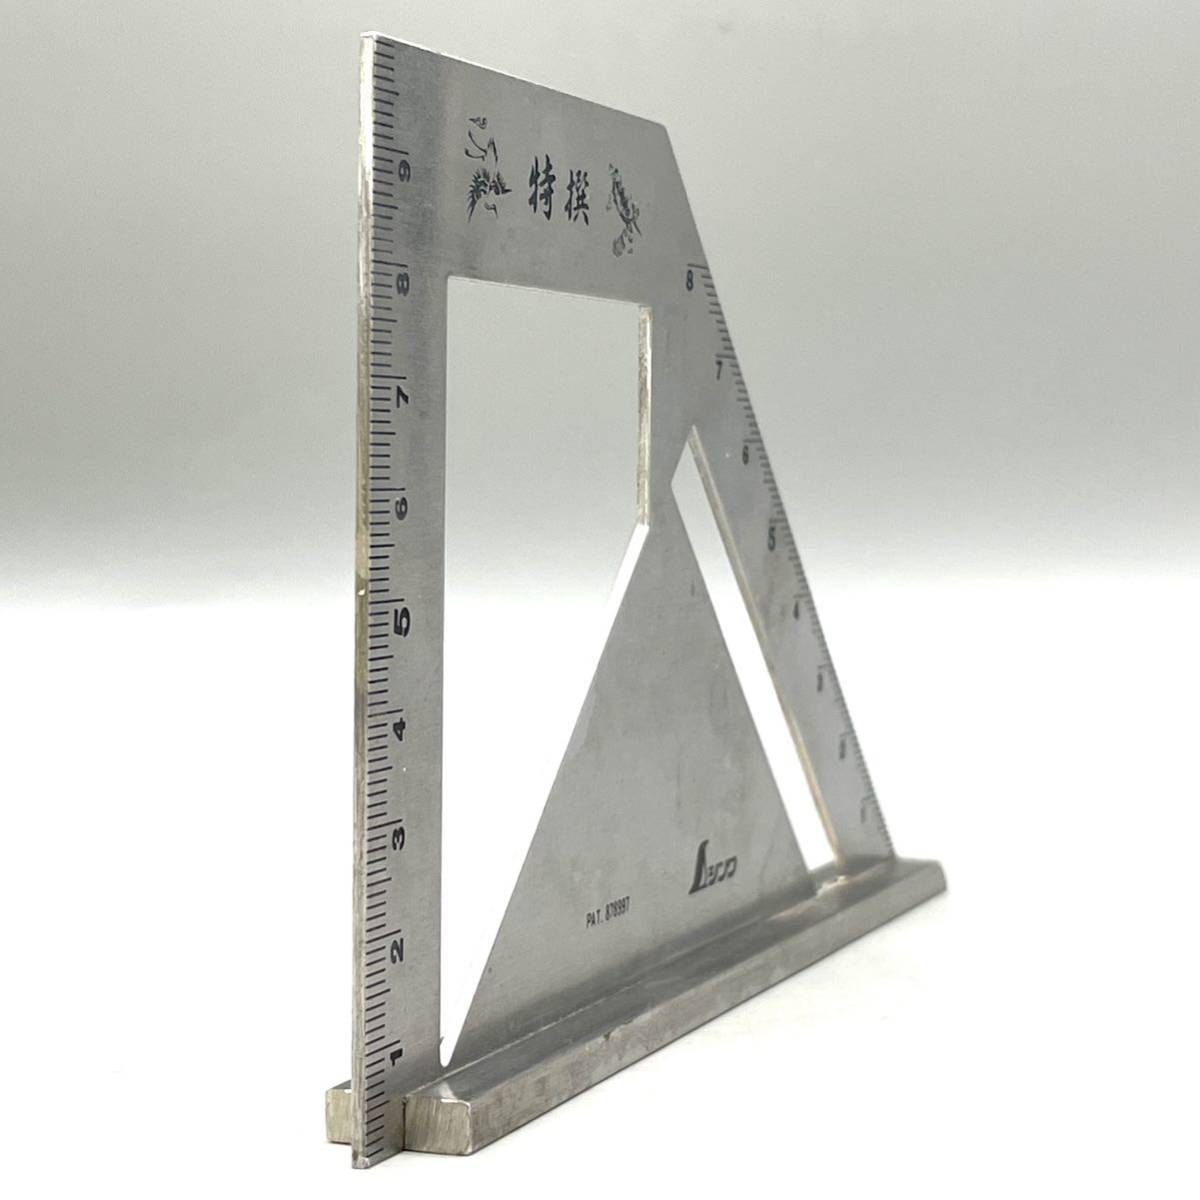 sinwa измерение Shinwa Sokutei 4H останавливаться type skoya металлический 878997 STAINLESS нержавеющая сталь инструмент линейка останавливаться type линейка измерительный прибор измеритель плотничный инструмент DIY рекомендация 